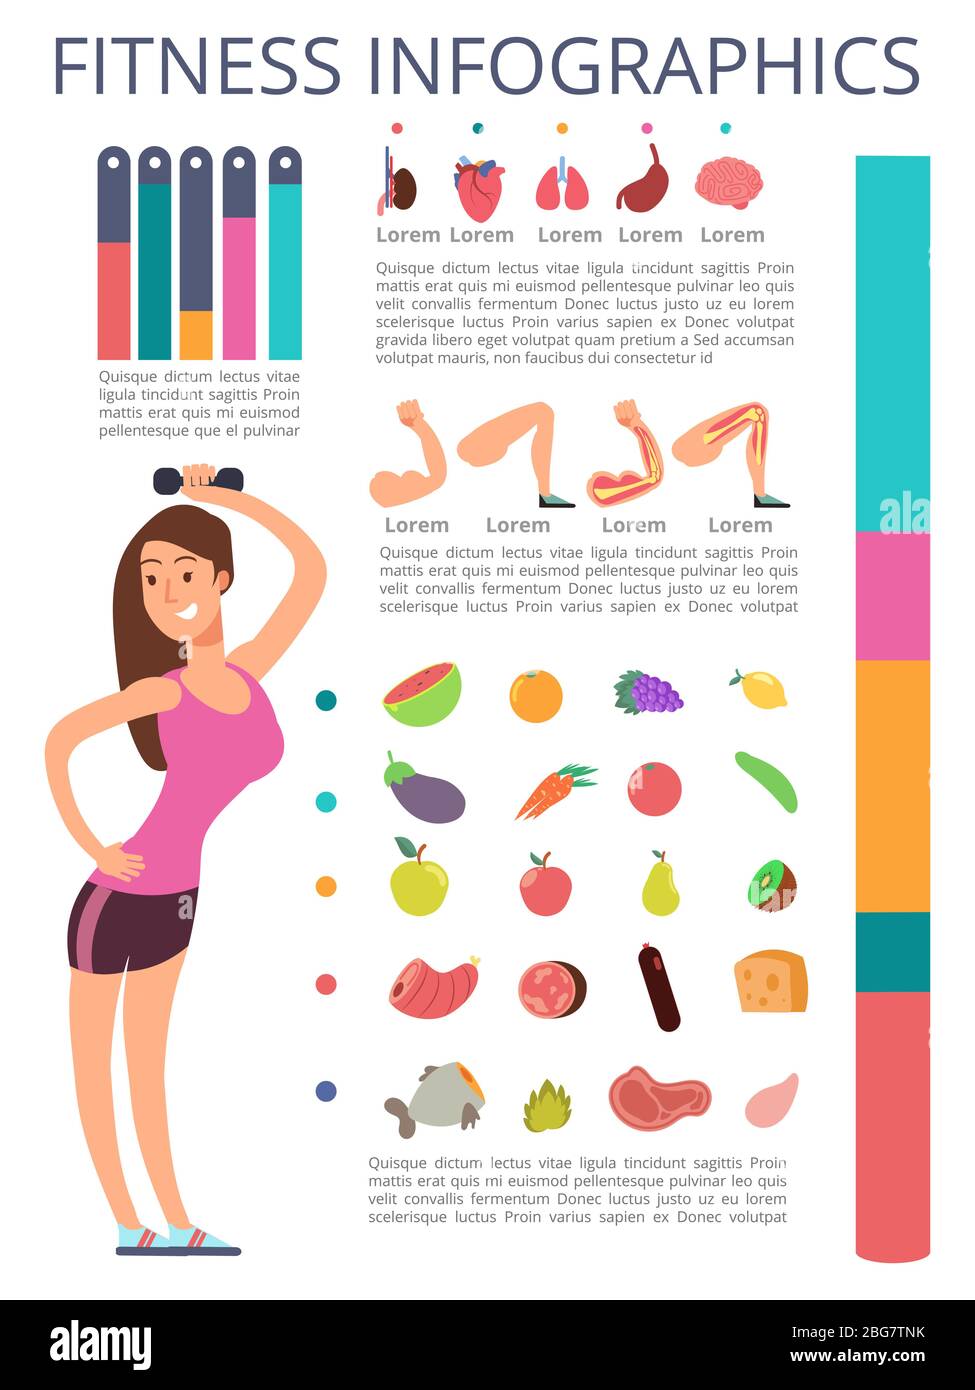 Personaggio donna sport isolato su sfondo bianco. Infografica su fitness e stile di vita sano. Sport sano femminile, fitness infografica lifestyle. V Illustrazione Vettoriale